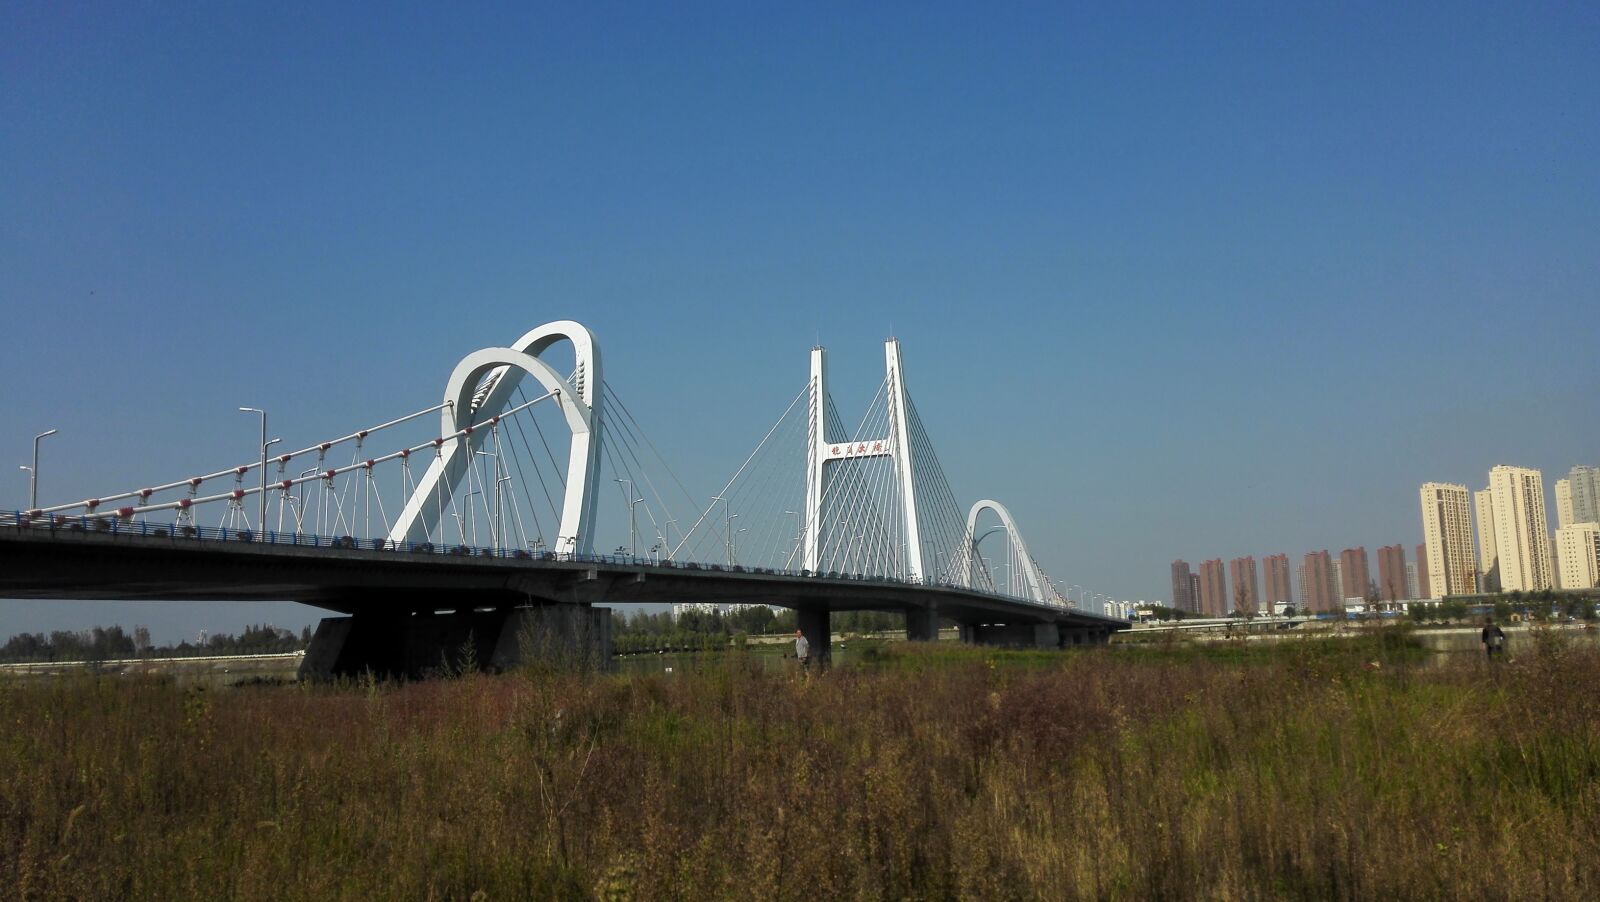 HUAWEI H60-L01 sample photo. Longgang bridge, hanjiang, autumn photography